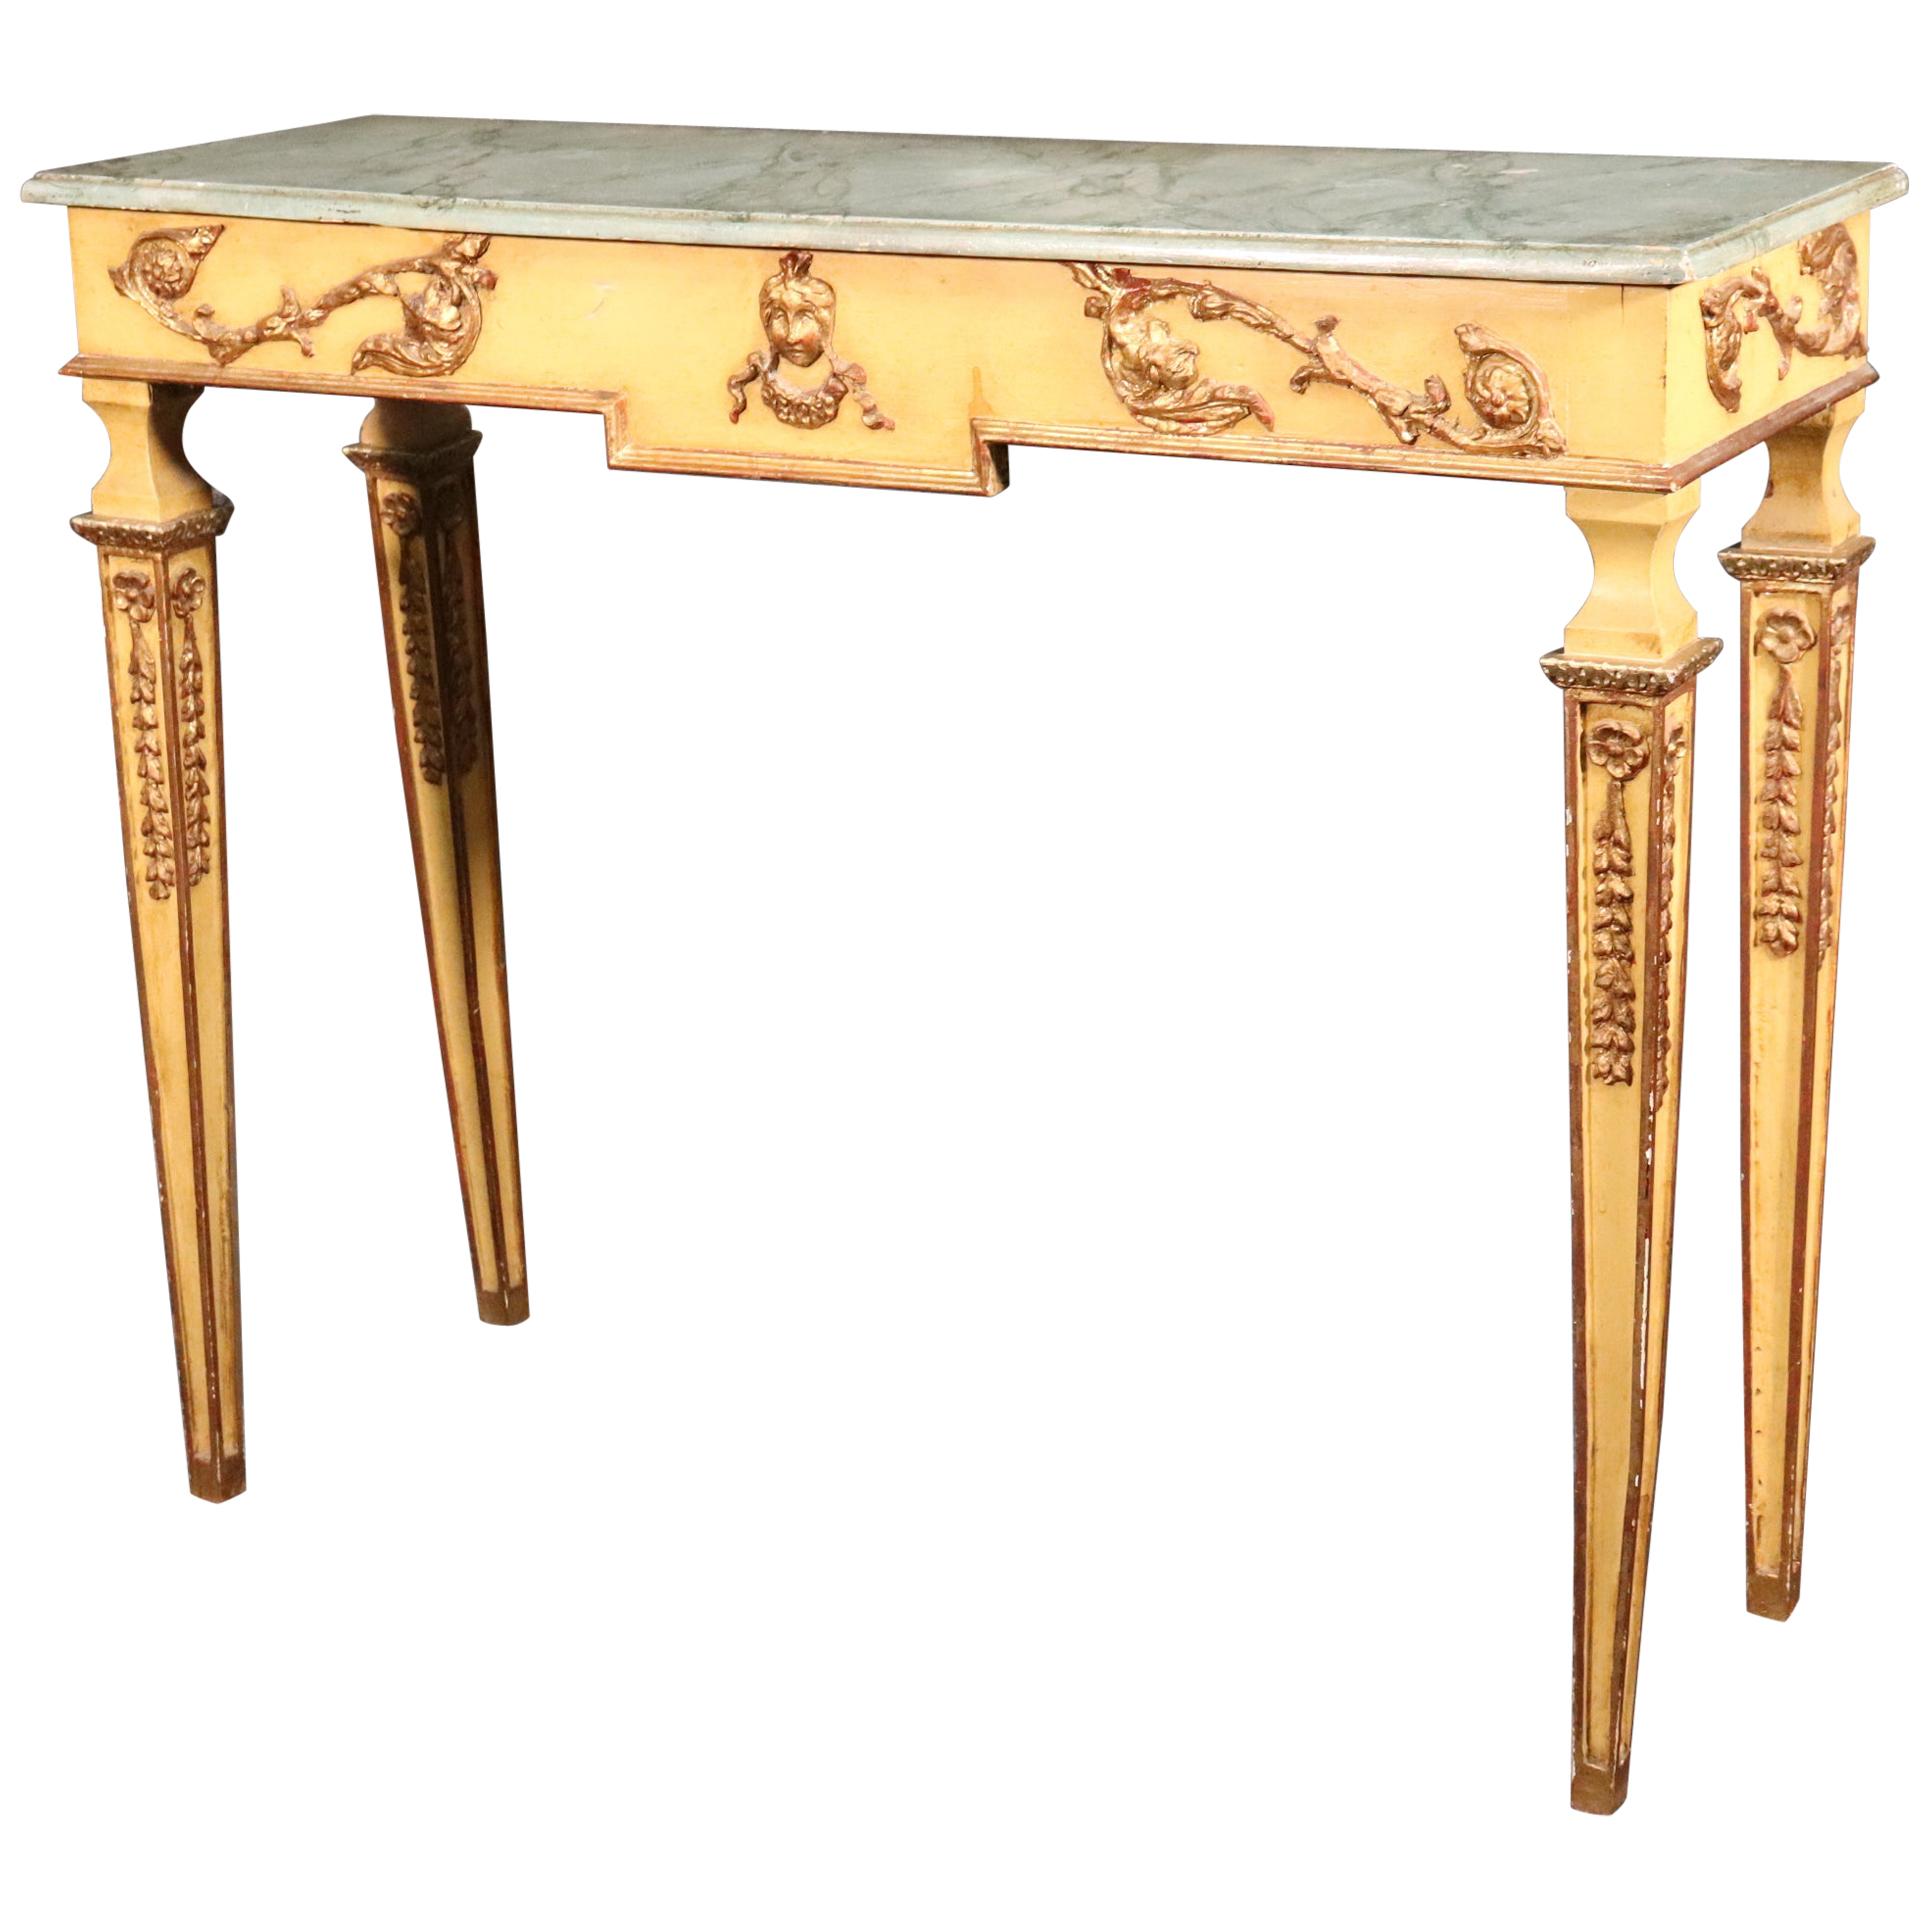 Table console de style Régence française décorée en peinture crème et dorée